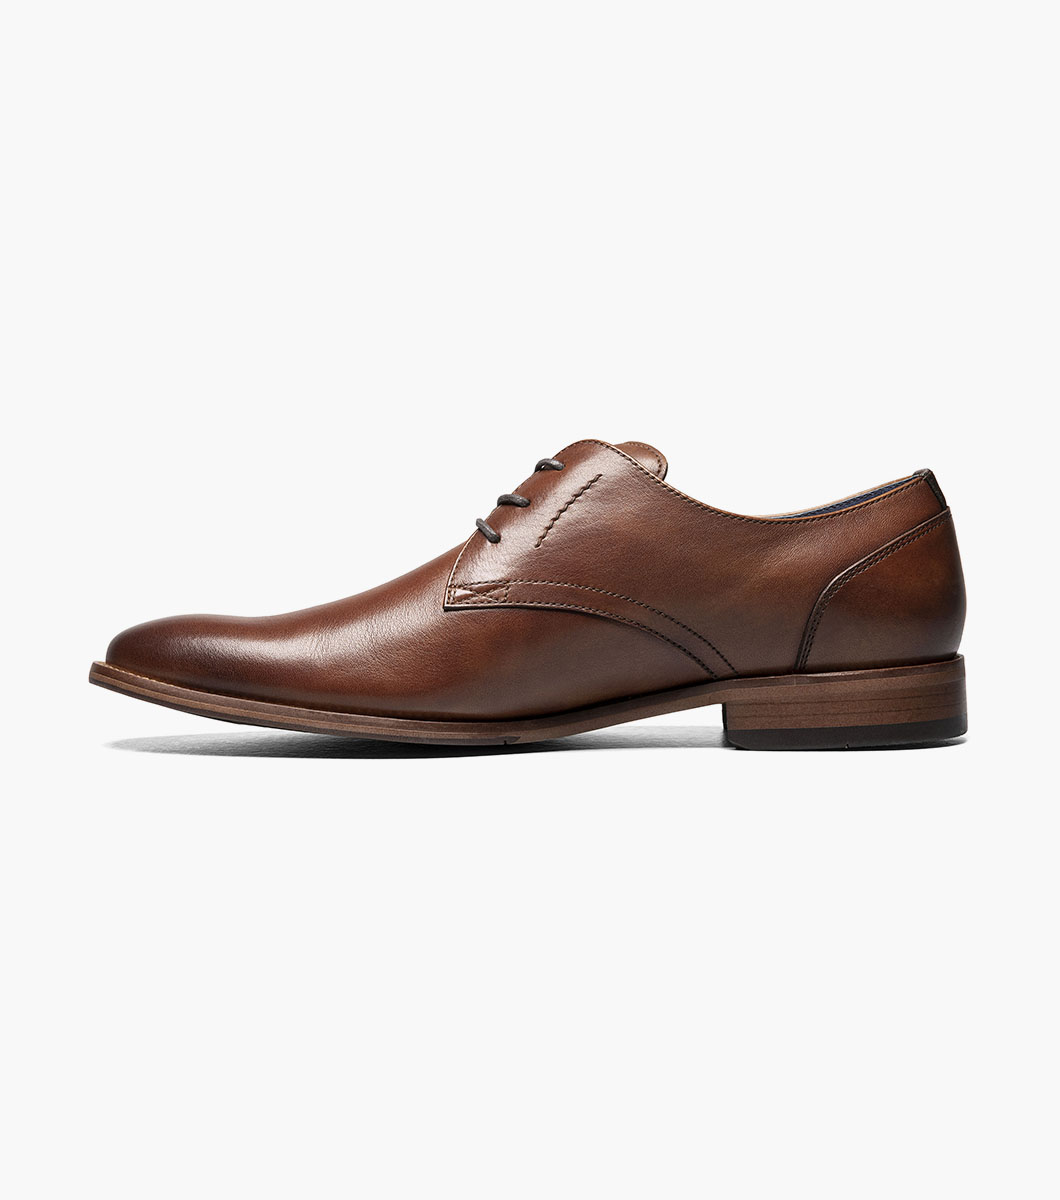 Flex Plain Toe Oxford Men’s Dress Shoes | Florsheim.com